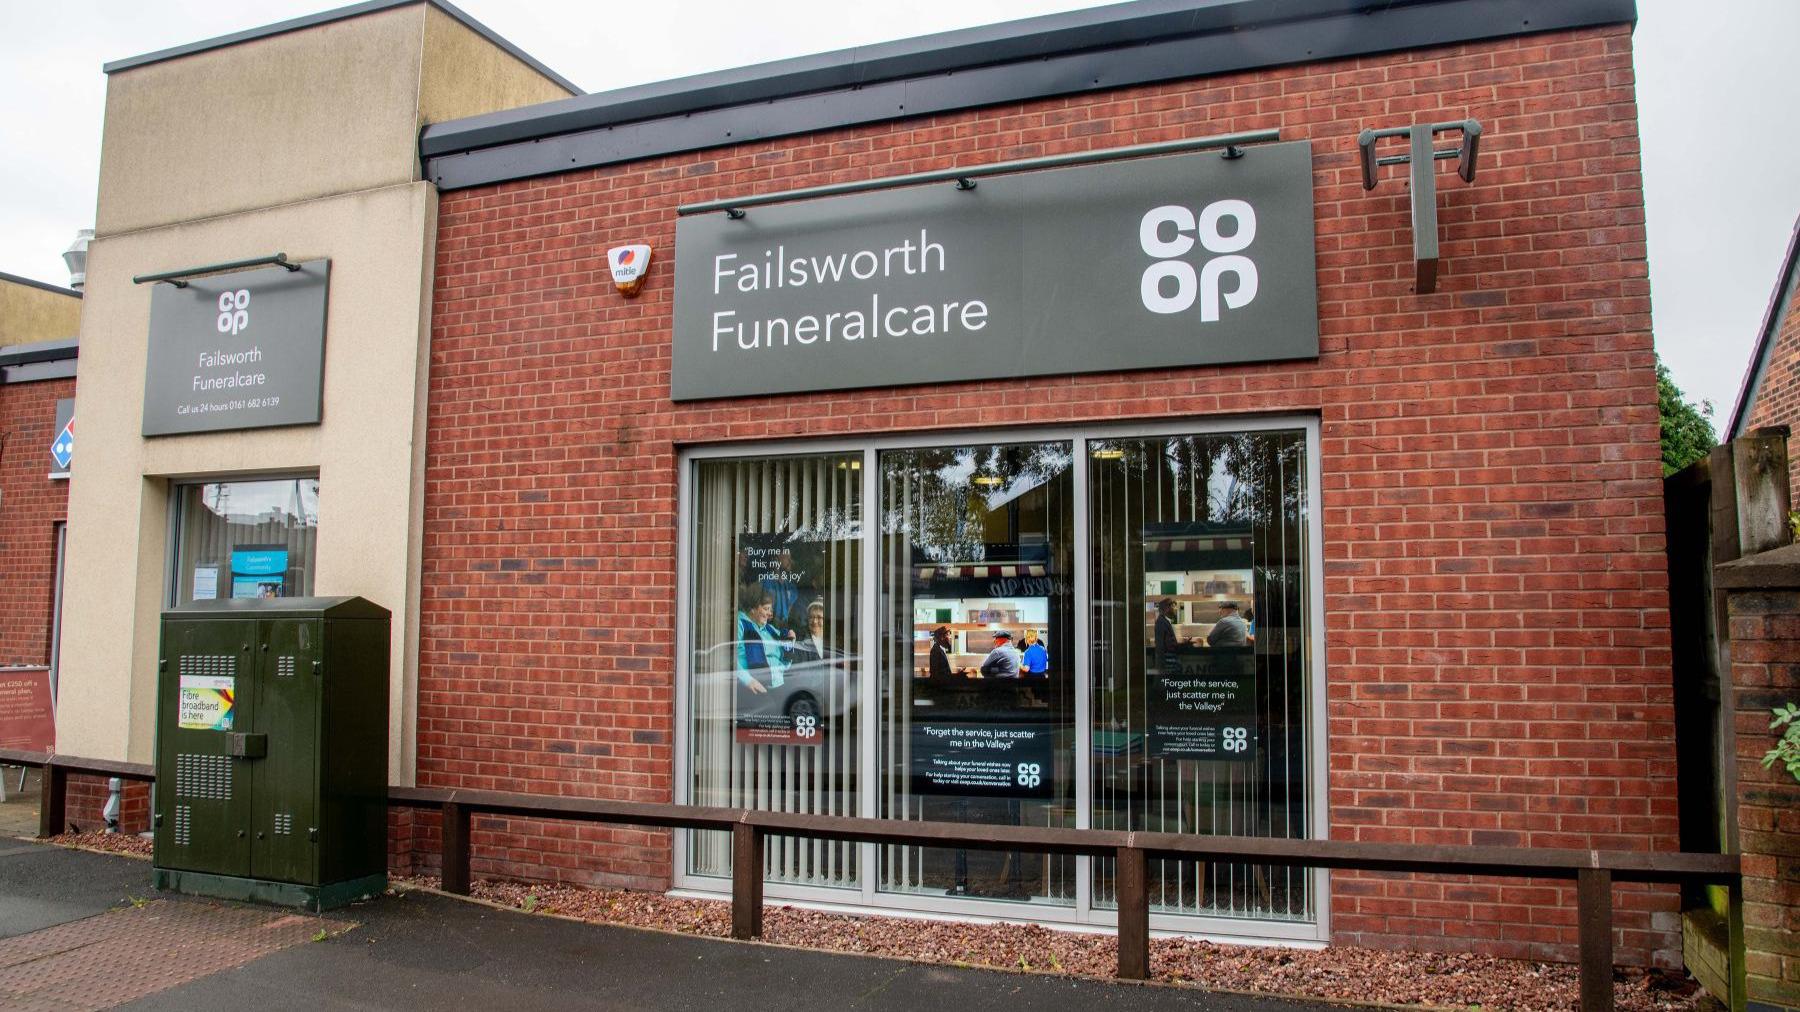 Images Co-op Funeralcare, Failsworth